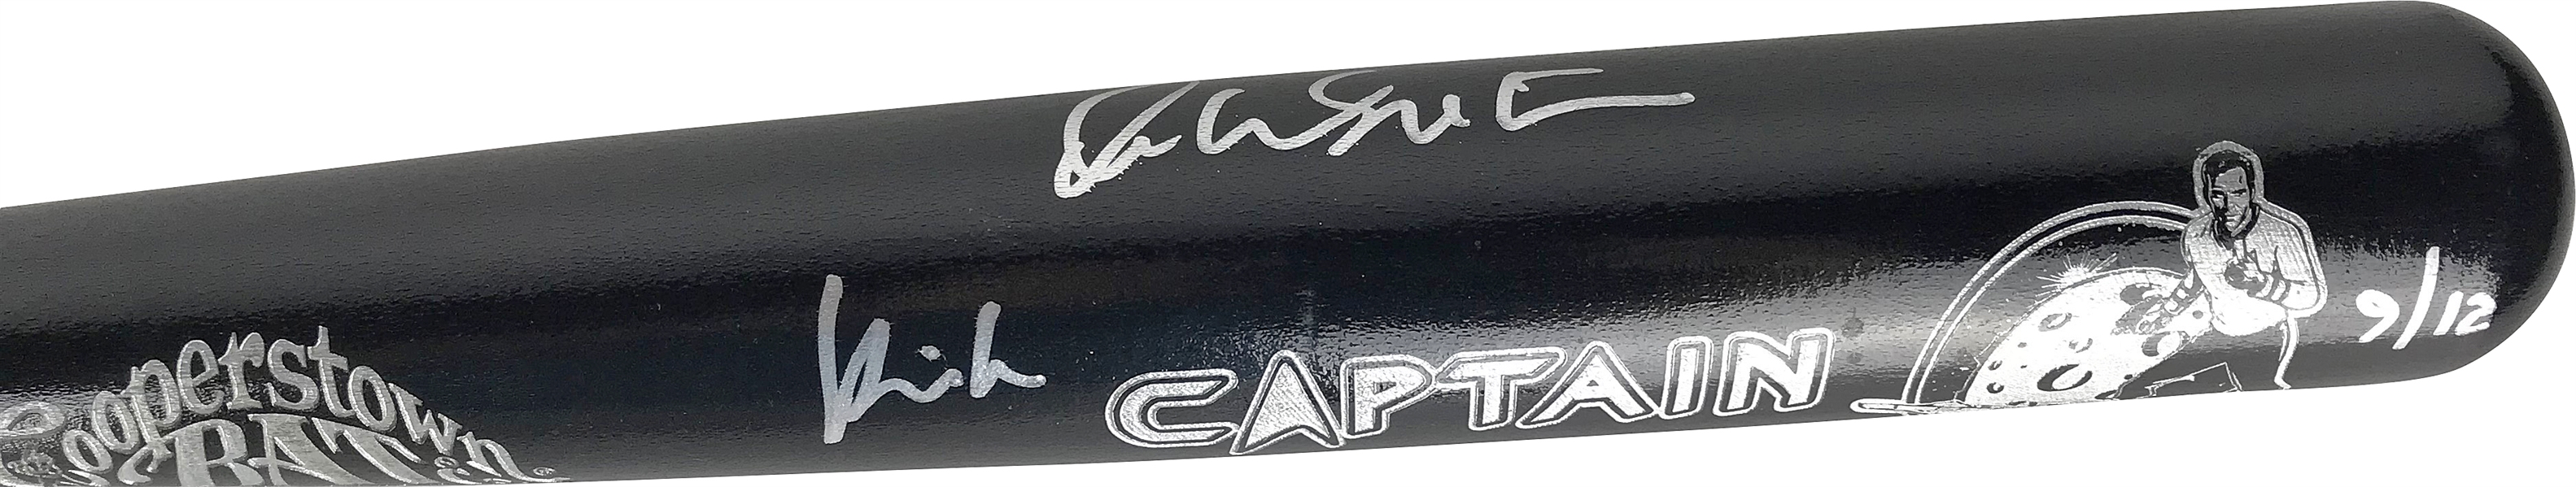 William Shatner Signed & Inscribed "Kirk" Star Trek Limited Edition Baseball Bat (JSA)